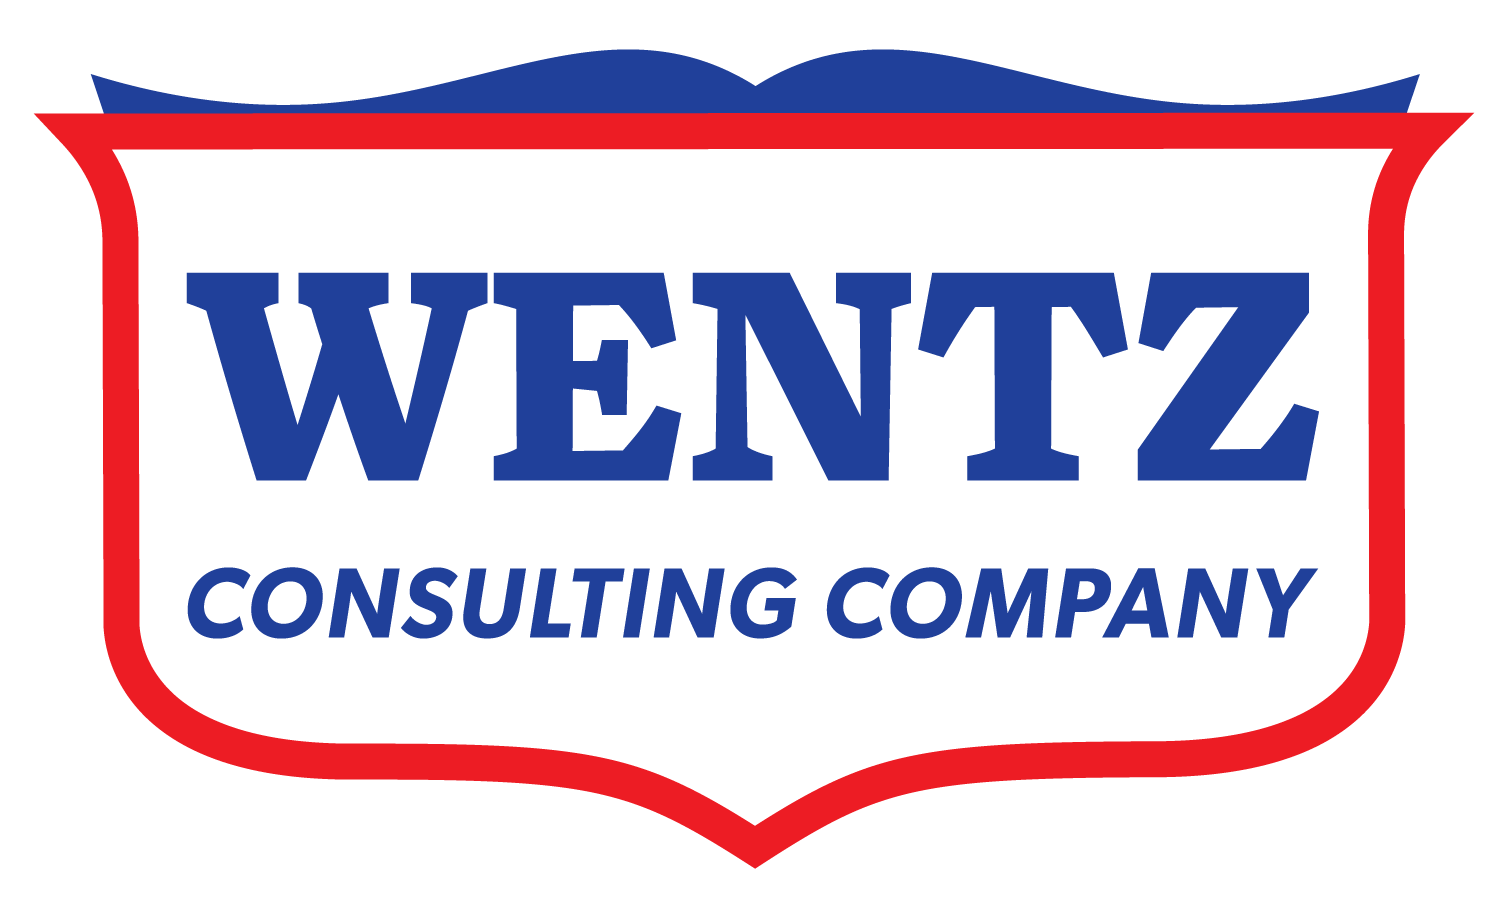 Wentz Consulting Company